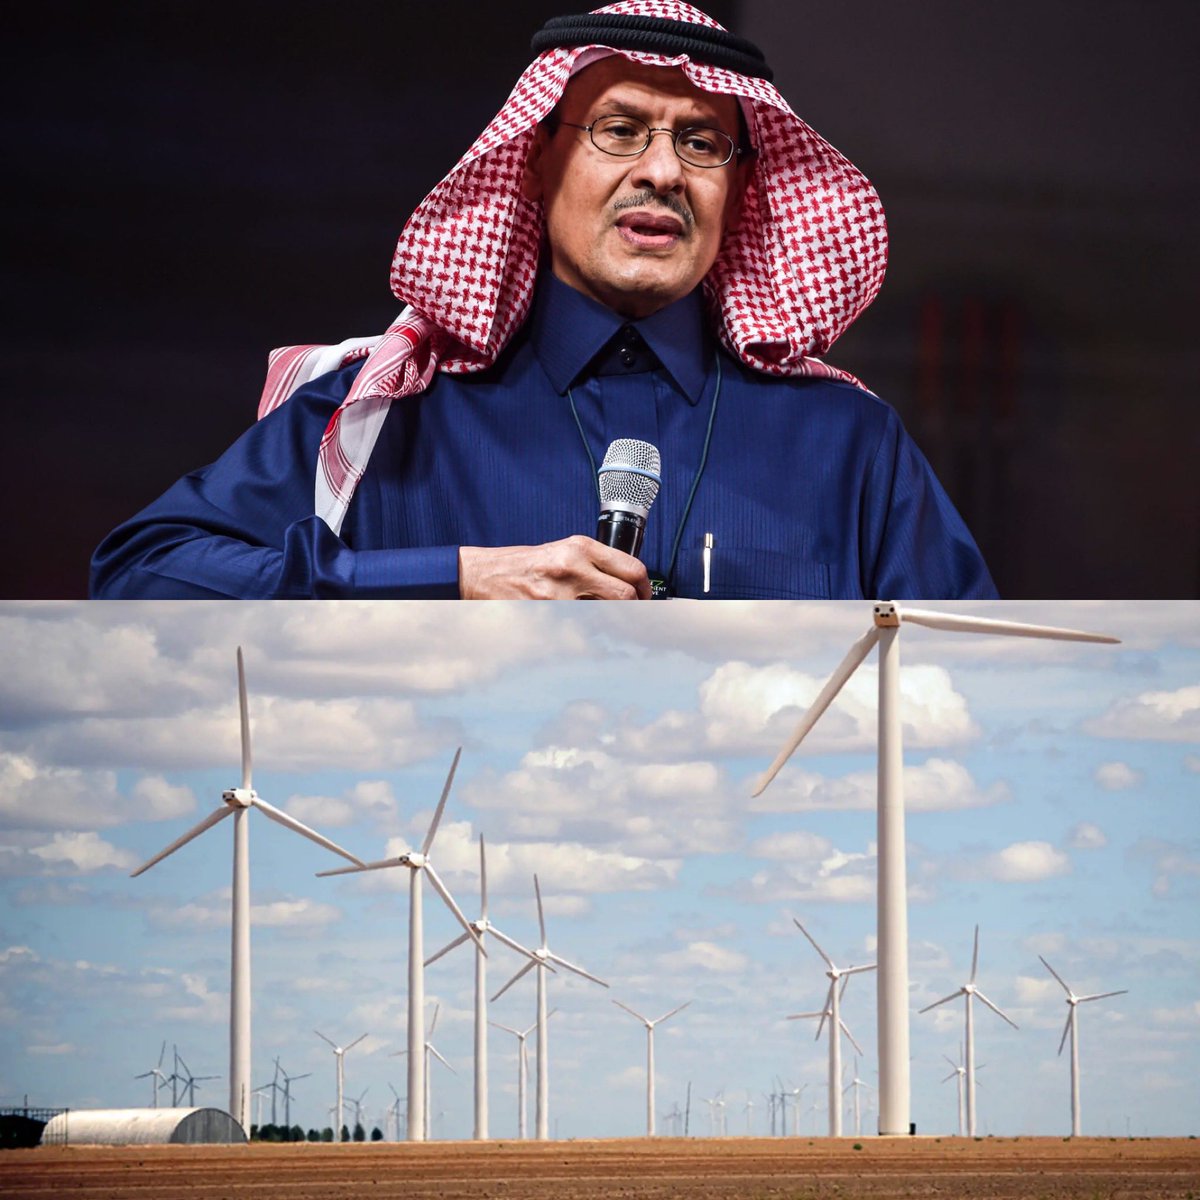 وزير الطاقة السعودي: مشروعا الغاط ووعد الشمال حققا أرقاماً قياسية عالمية في انخفاض تكلفة إنتاج الكهرباء من طاقة الرياح، والطاقة المنتجة سنوياً من المشروعين ستكفي استهلاك ربع مليون وحدة سكنية